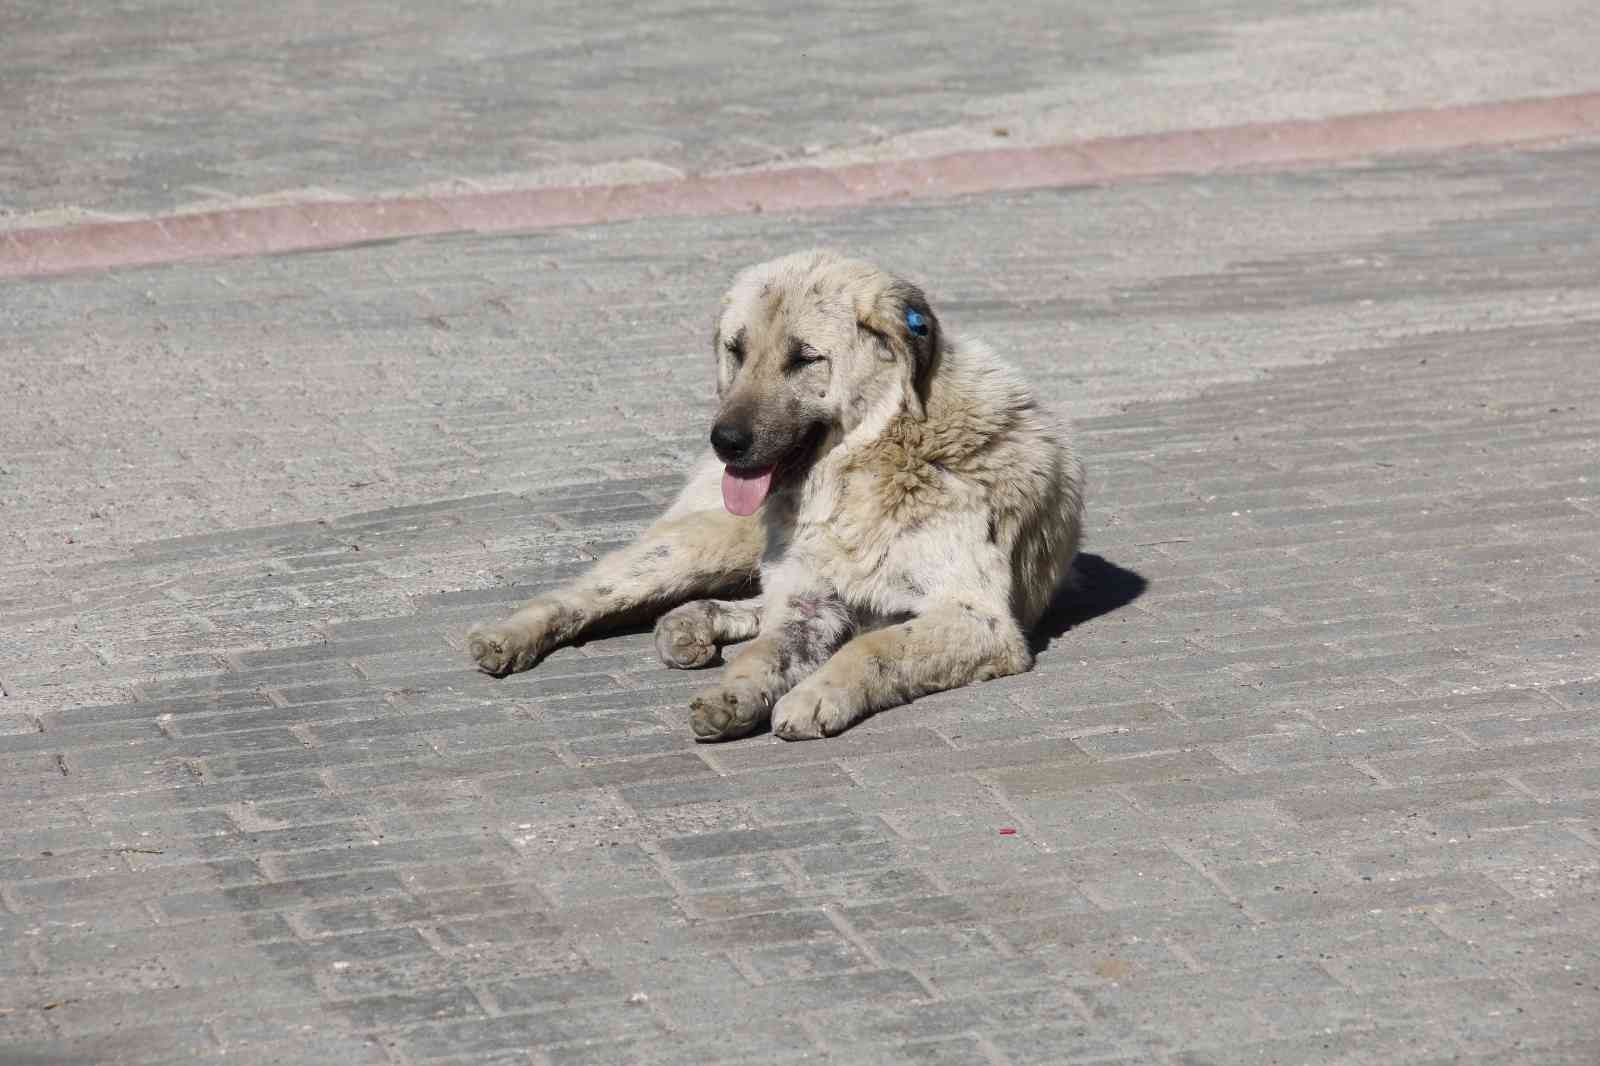 Kocaeli Üniversitesi’nde başıboş köpek sorunu gün geçtikte büyüyor. Köpeklerin saldırısına uğradıklarını söyleyen öğrenciler, hem köpeklerin hem ...